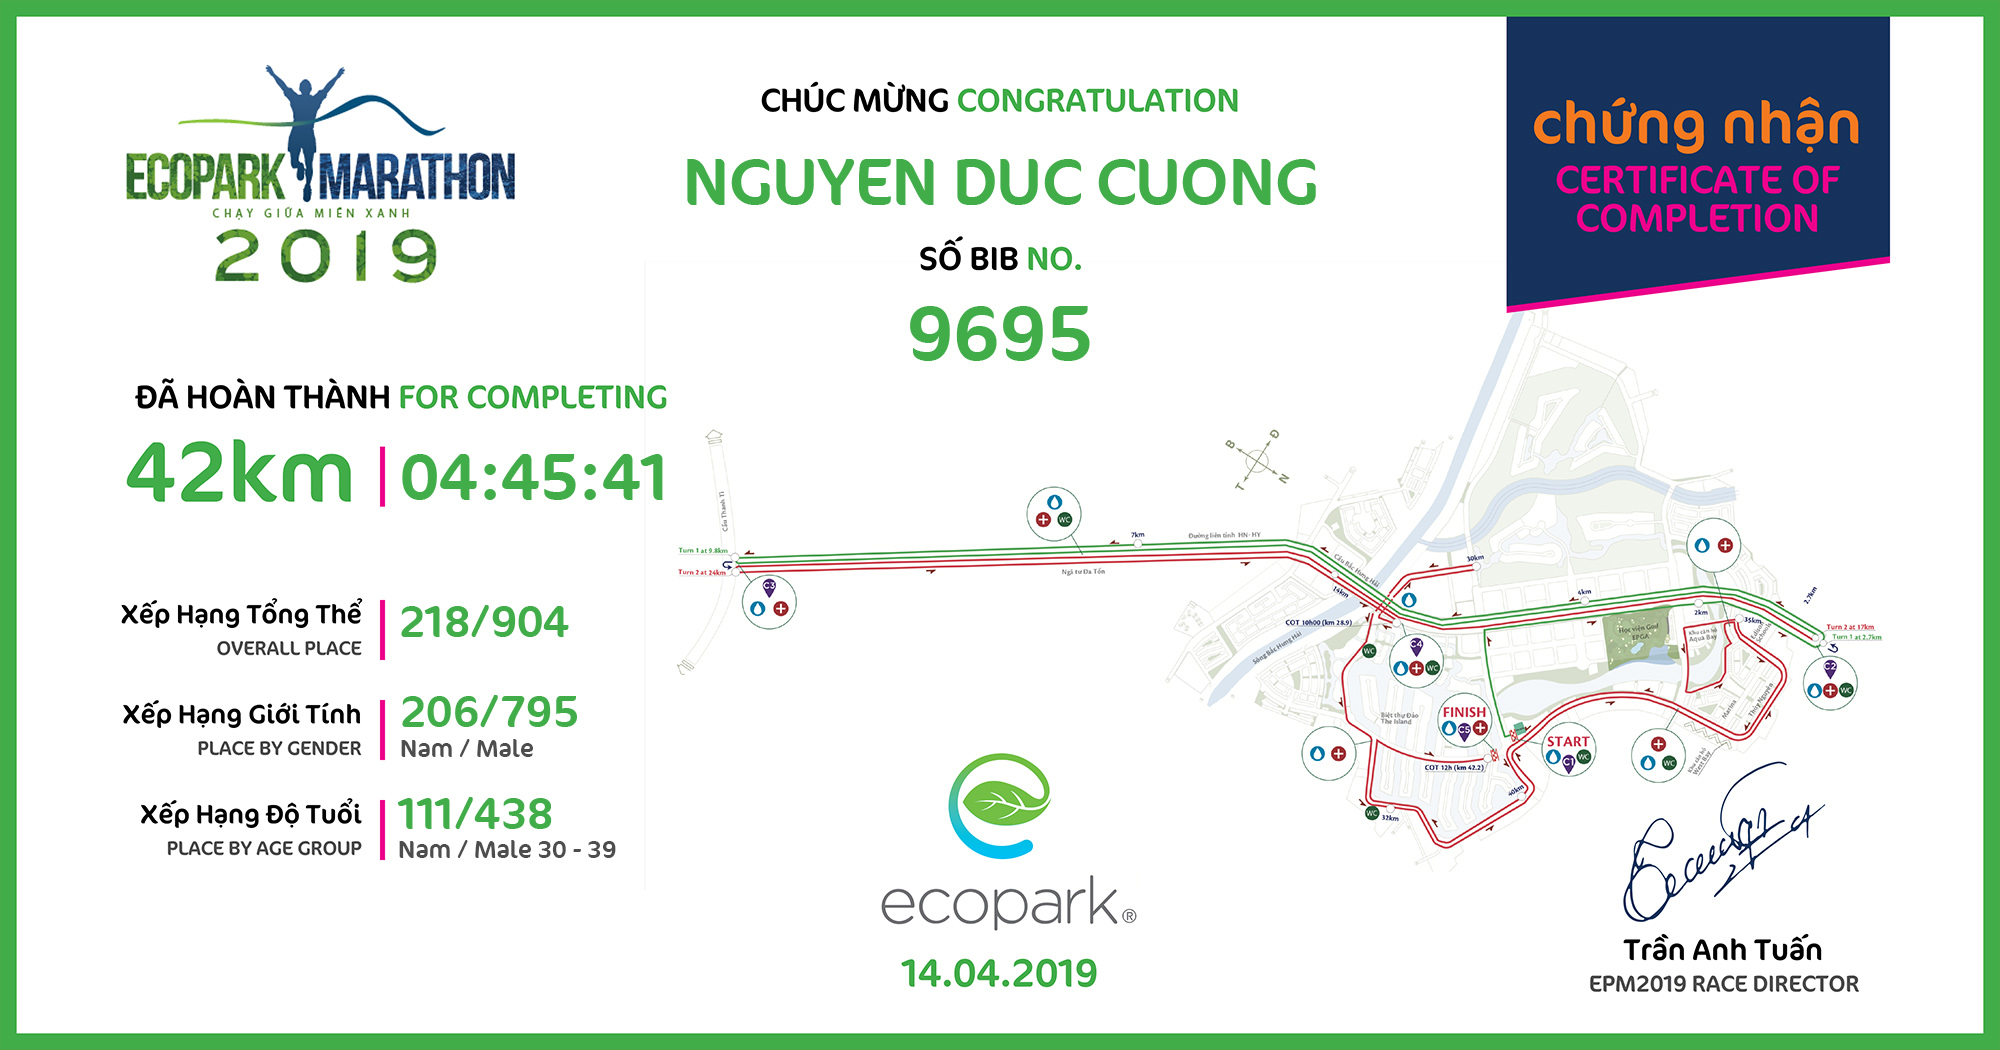 9695 - Nguyen Duc Cuong